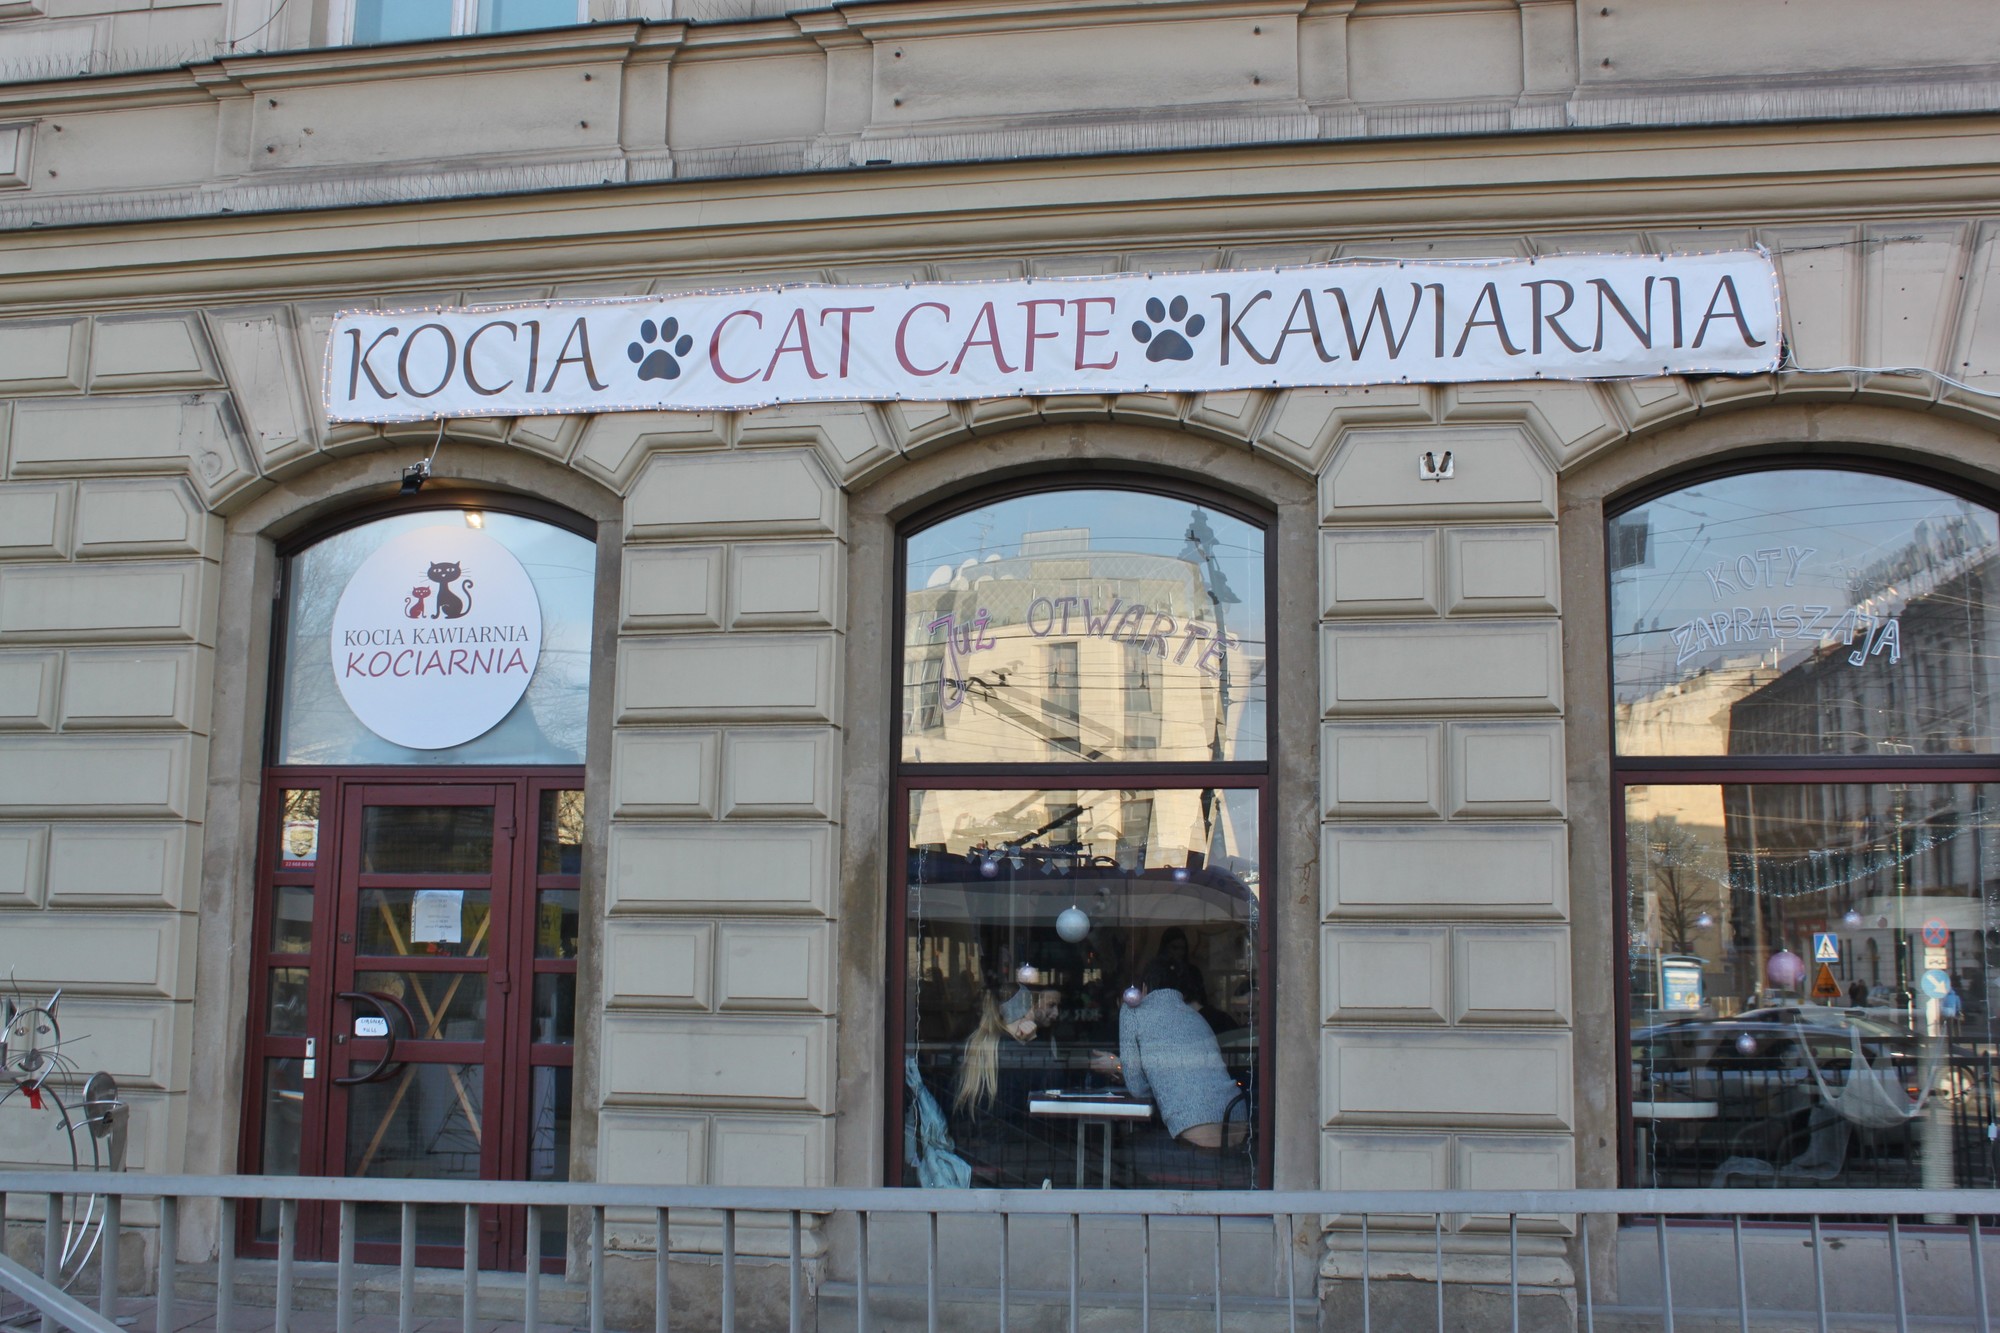 Kraków Cat Cafe | Kraków Cafes | Krakow